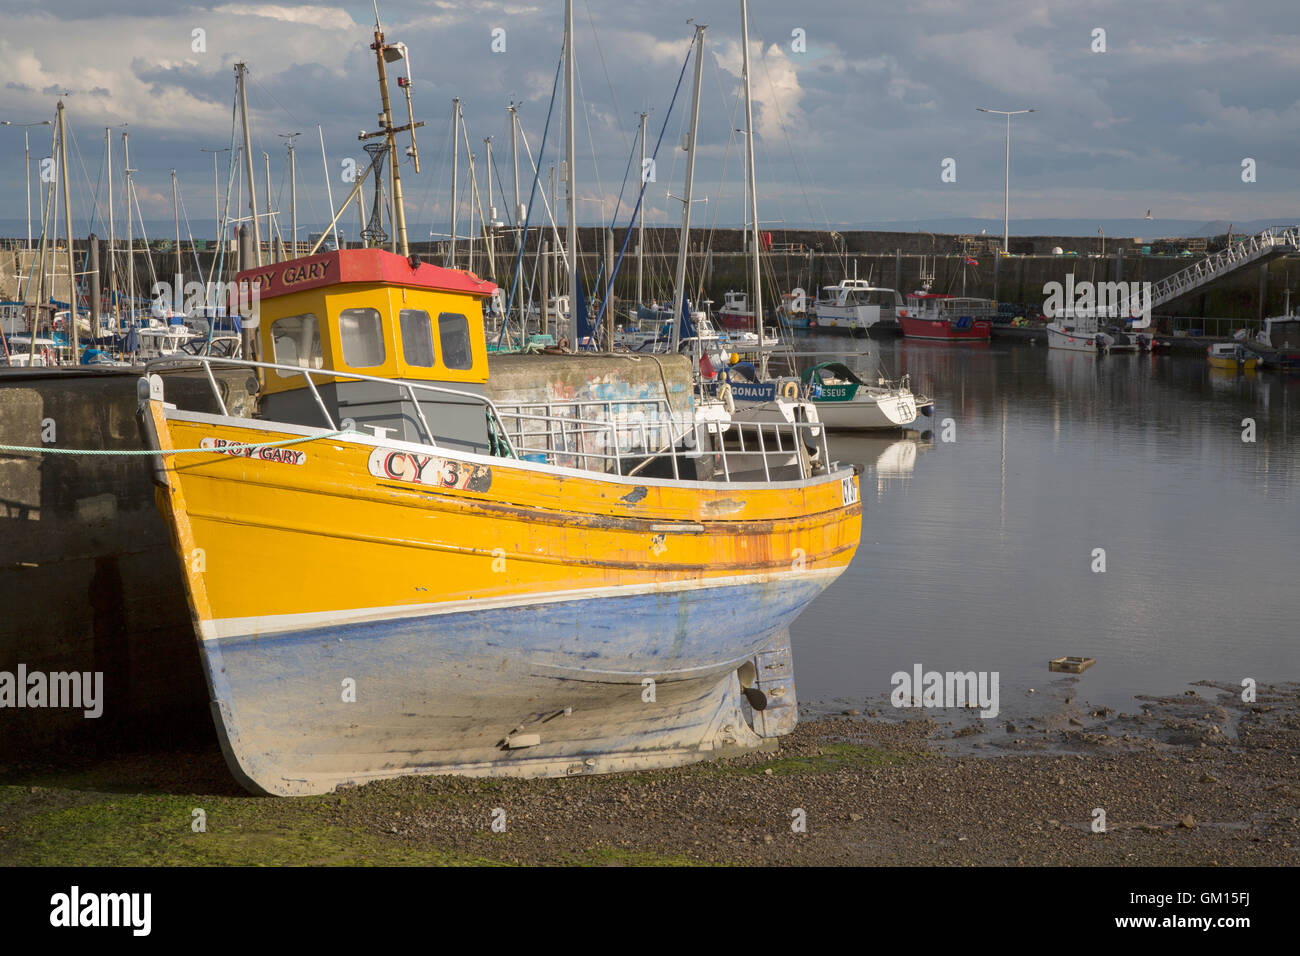 Barco de pesca en el puerto, Anstruther, Fife, Escocia, Reino Unido Foto de stock